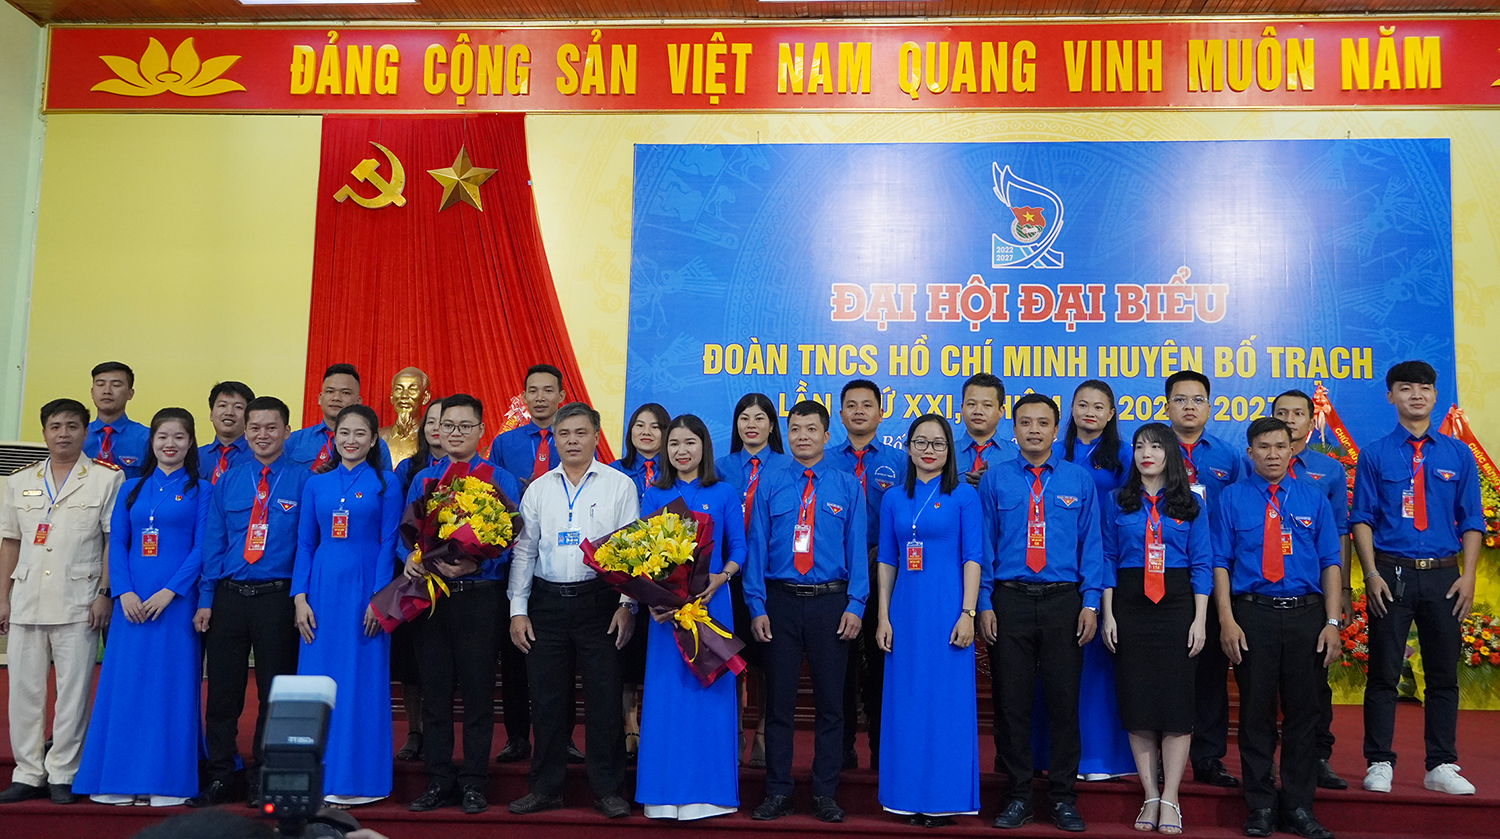 Đại hội đại biểu Đoàn TNCS Hồ Chí Minh huyện Bố Trạch lần thứ XXI